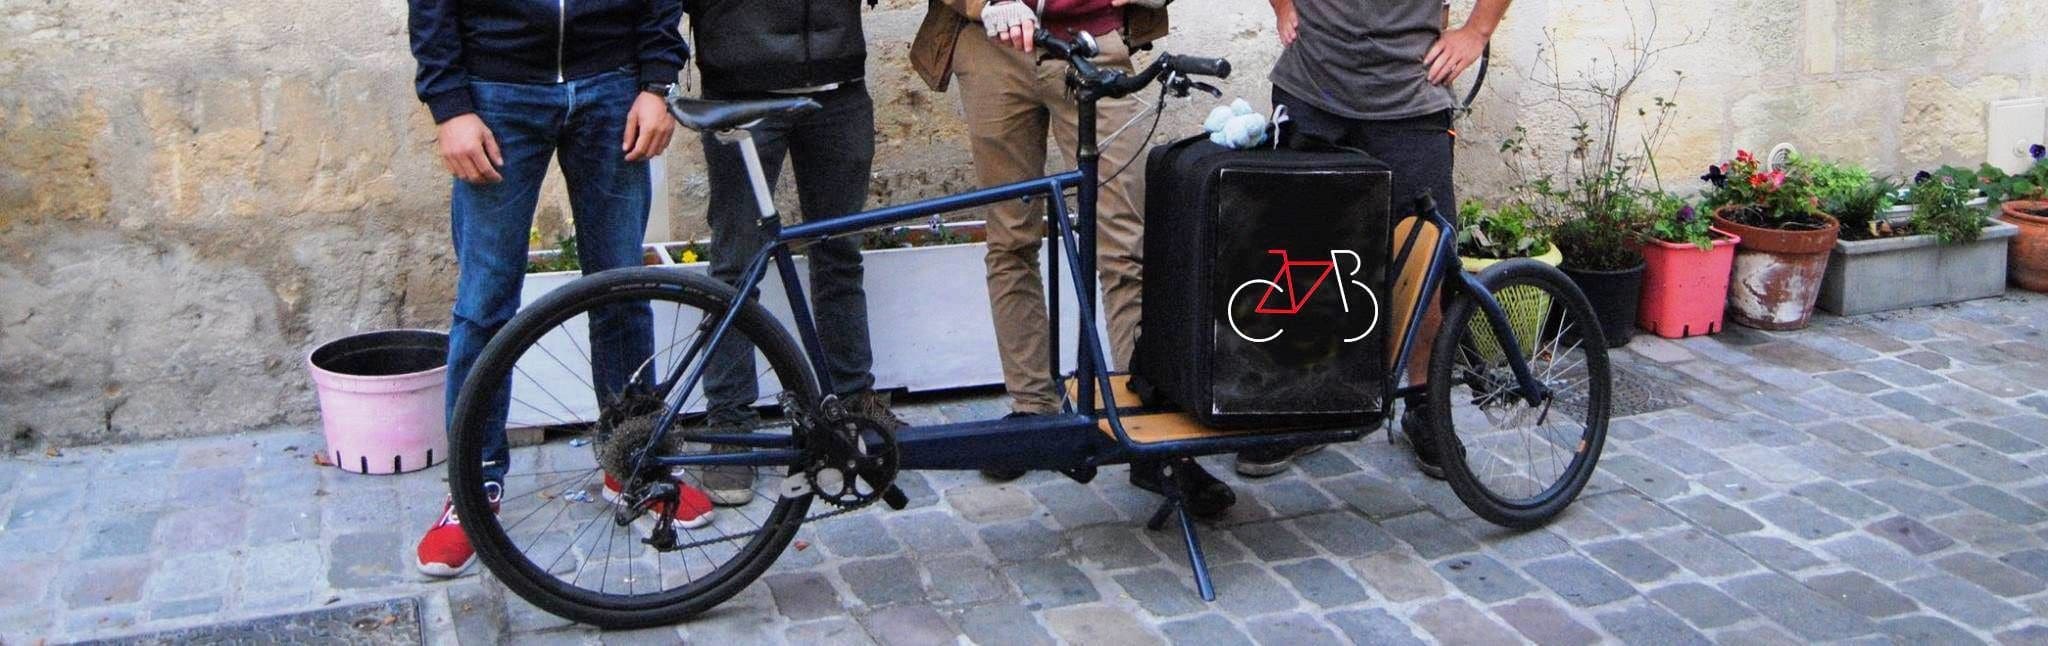 Les Coursiers Bordelais, une coopérative locale de livreurs à vélo se lance